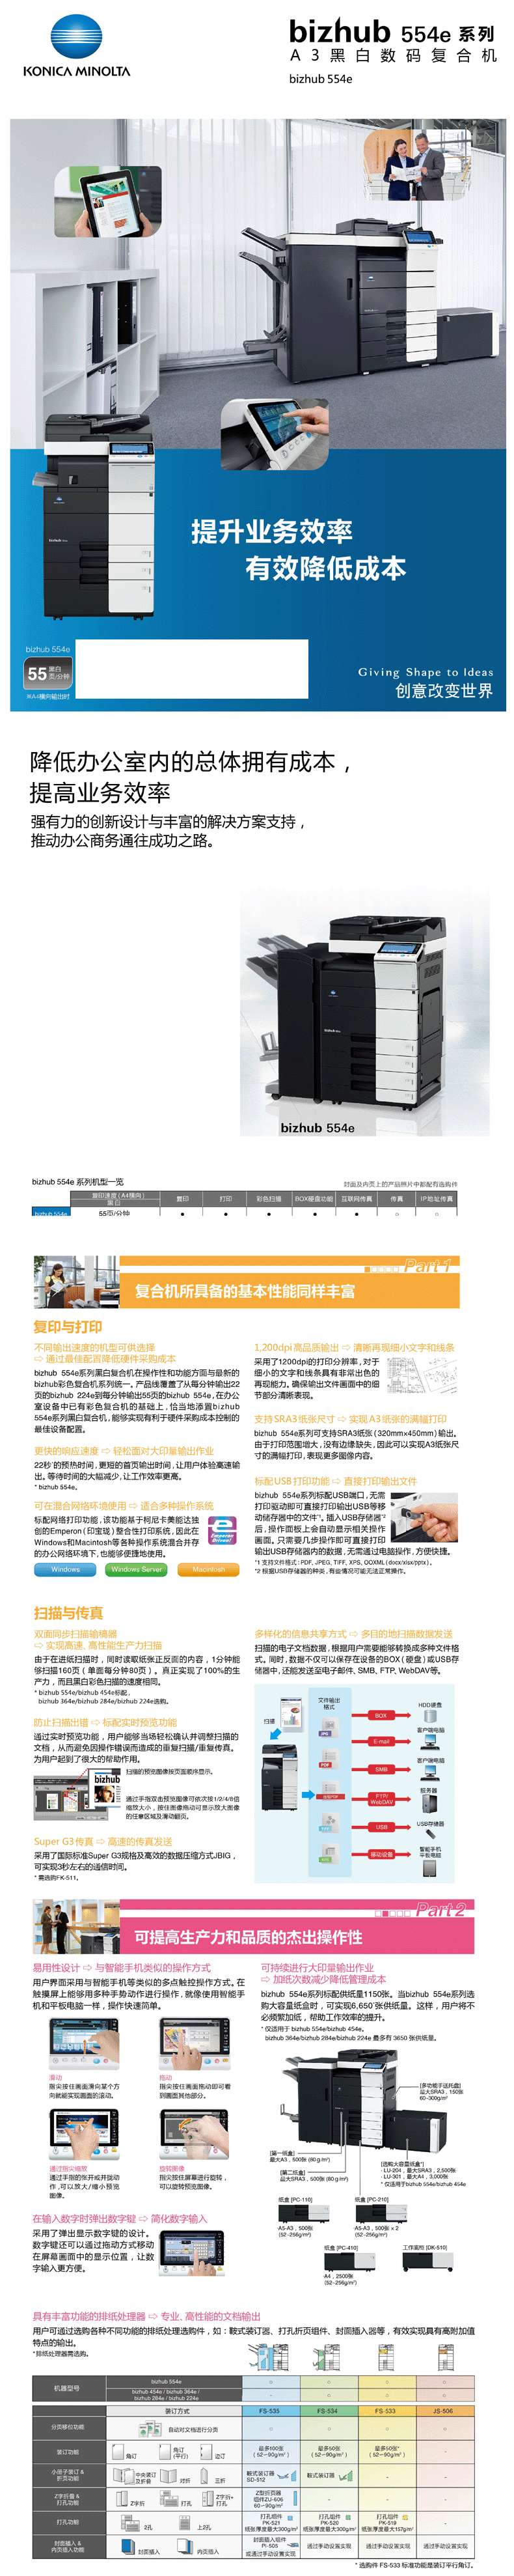 柯尼卡美能达 bizhub 554e（FS）A3 黑白多功能复合机 标配双面输稿器 排纸处理器 装订器 2纸盒 手送托盘